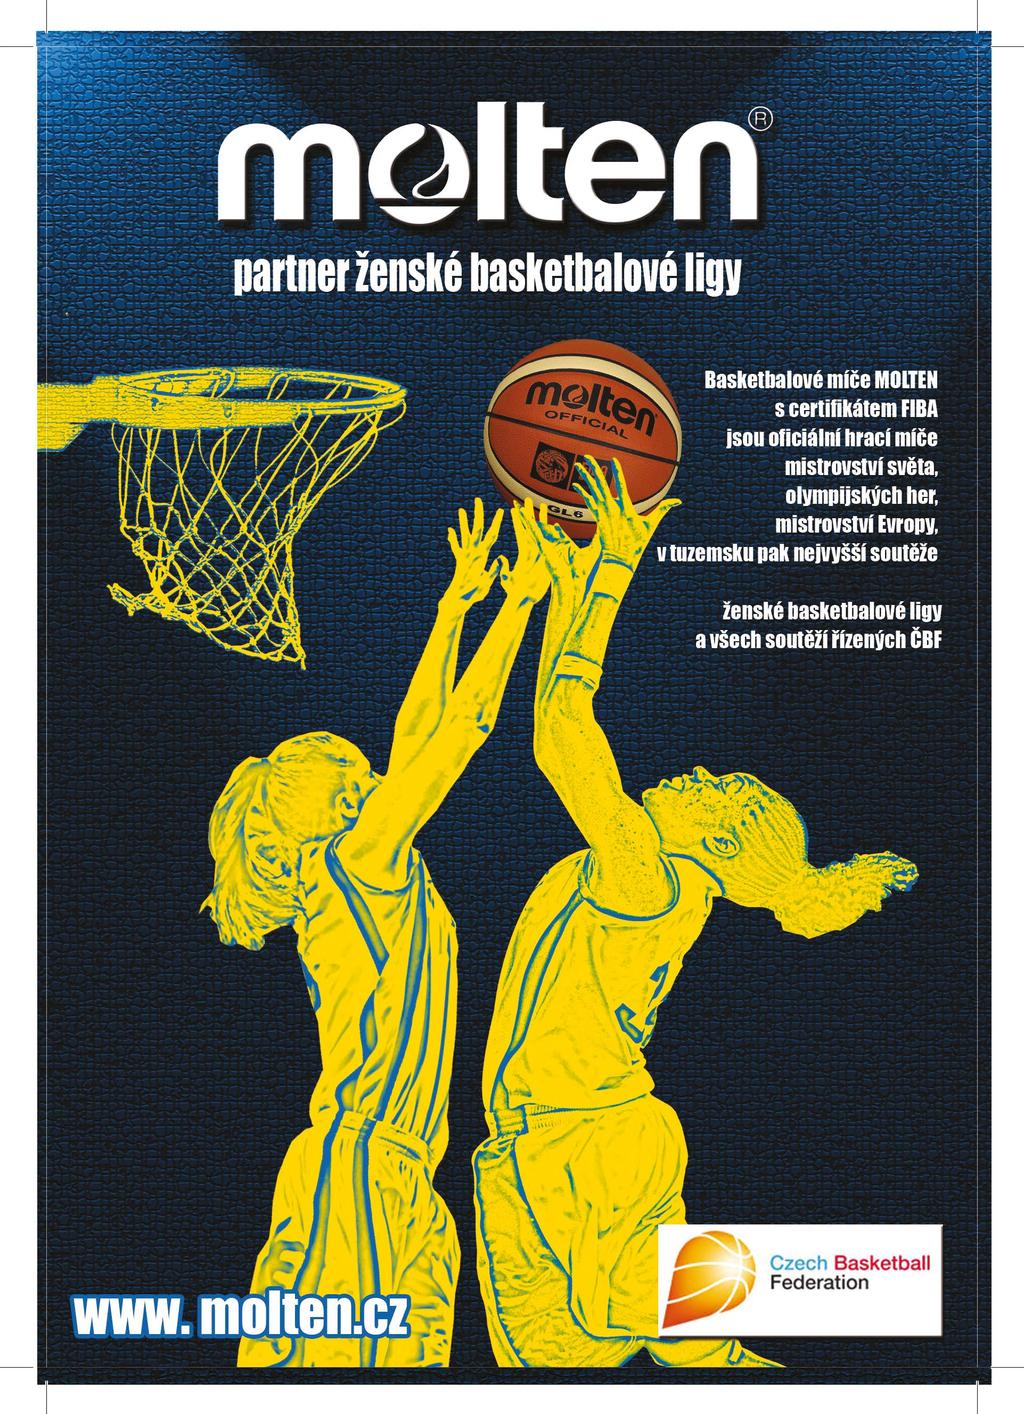 ASOCIACE ŽENSKÝCH LIGOVÝCH KLUBŮ Asociace ženských ligových klubů České basketbalové federace (AŽLK) je asociací všech klubů, které mají právo v příslušném